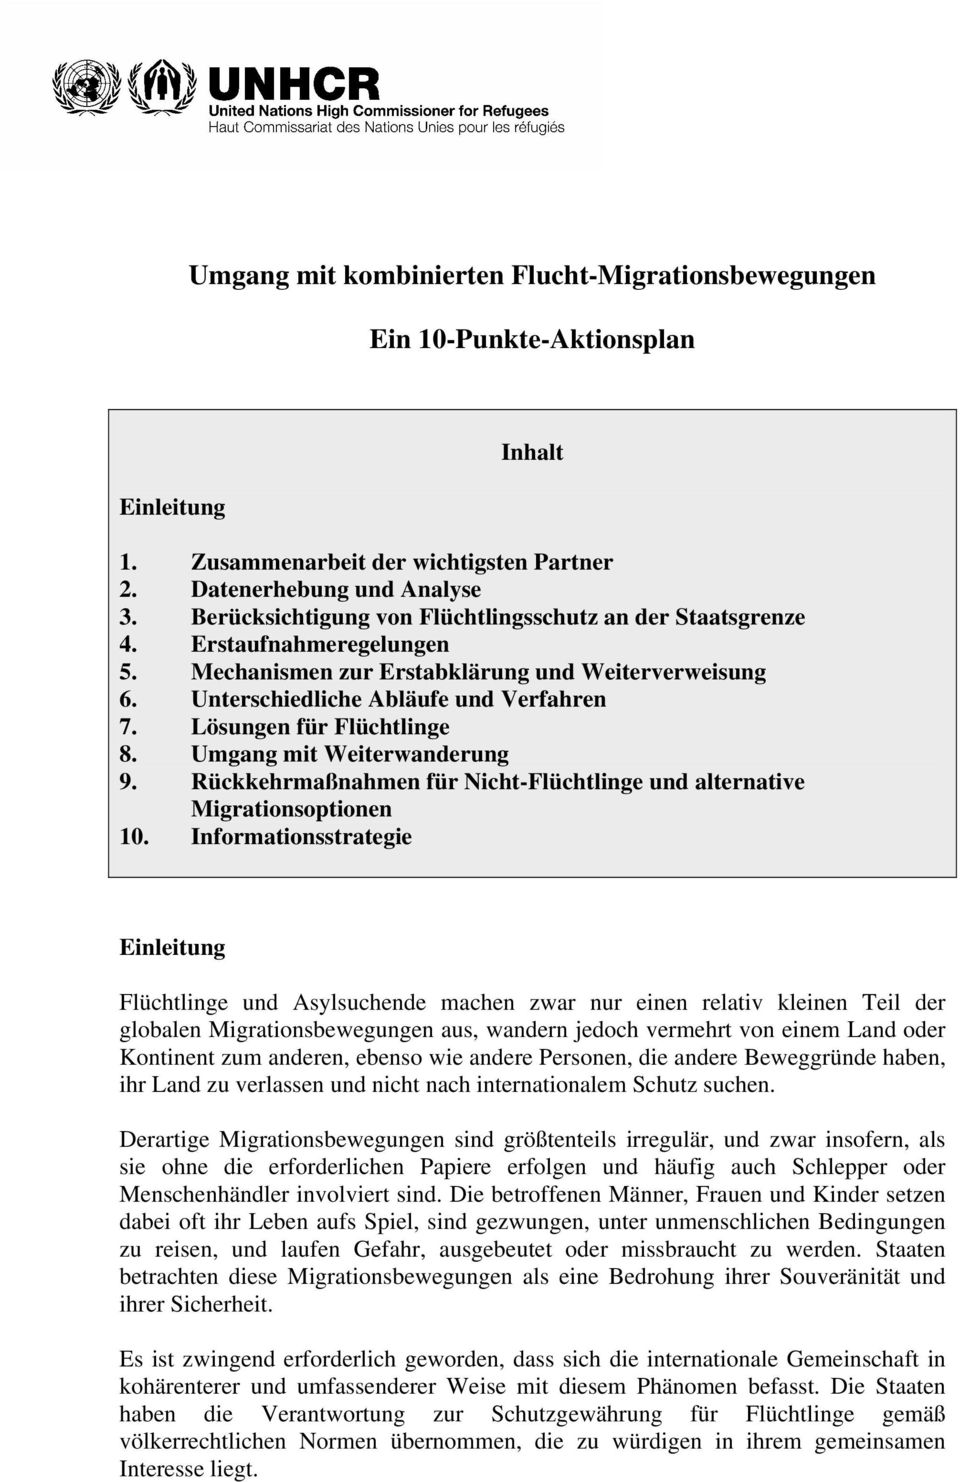 Lösungen für Flüchtlinge 8. Umgang mit Weiterwanderung 9. Rückkehrmaßnahmen für Nicht-Flüchtlinge und alternative Migrationsoptionen 10.